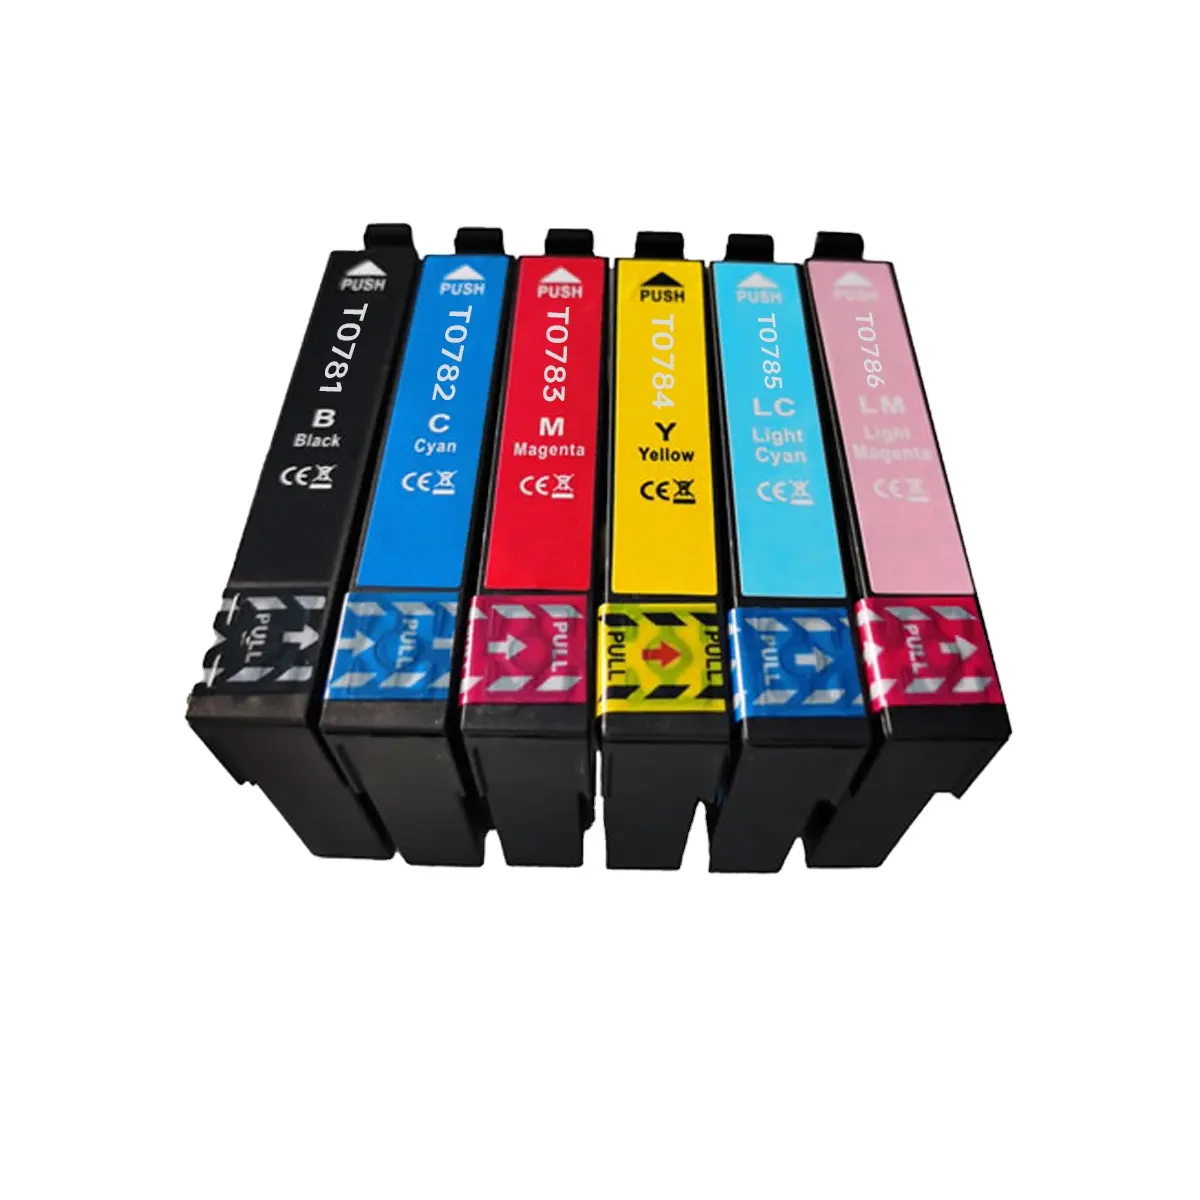 Cartucho de tinta de recarga recargable para Epson T0781-786 Stylus Photo RX580 RX595 RX680 R260 R280 R380 6 cartuchos